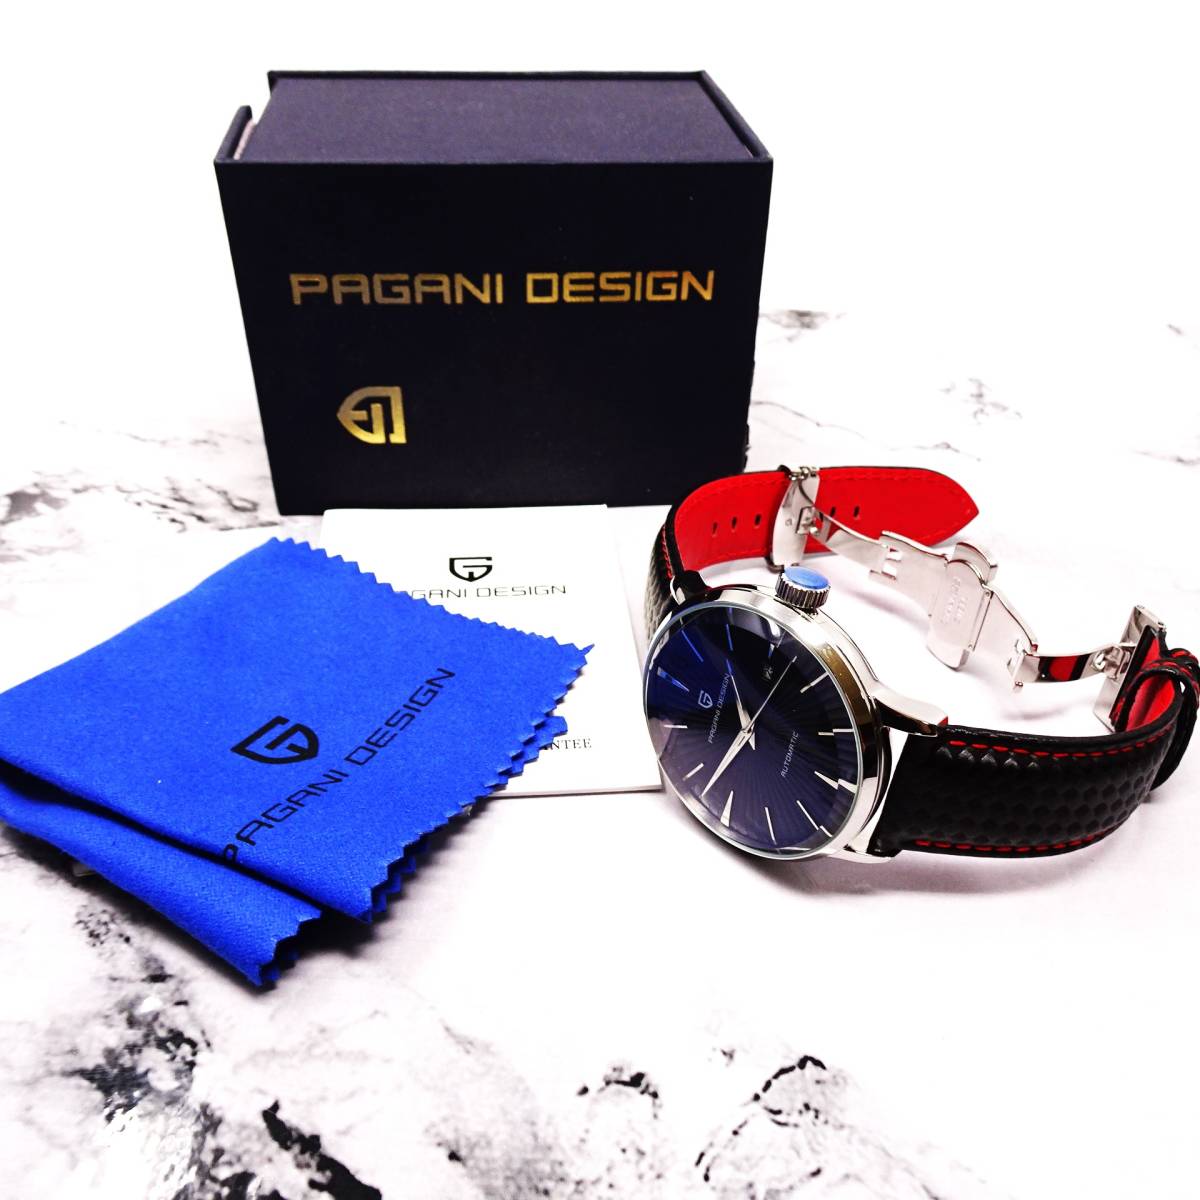 送料無料・新品・パガーニデザイン・メンズ・Seagull2813機械式腕時計 ・ステンレスケース・カーボン柄本革レザーストラップ・PD-2770_画像10